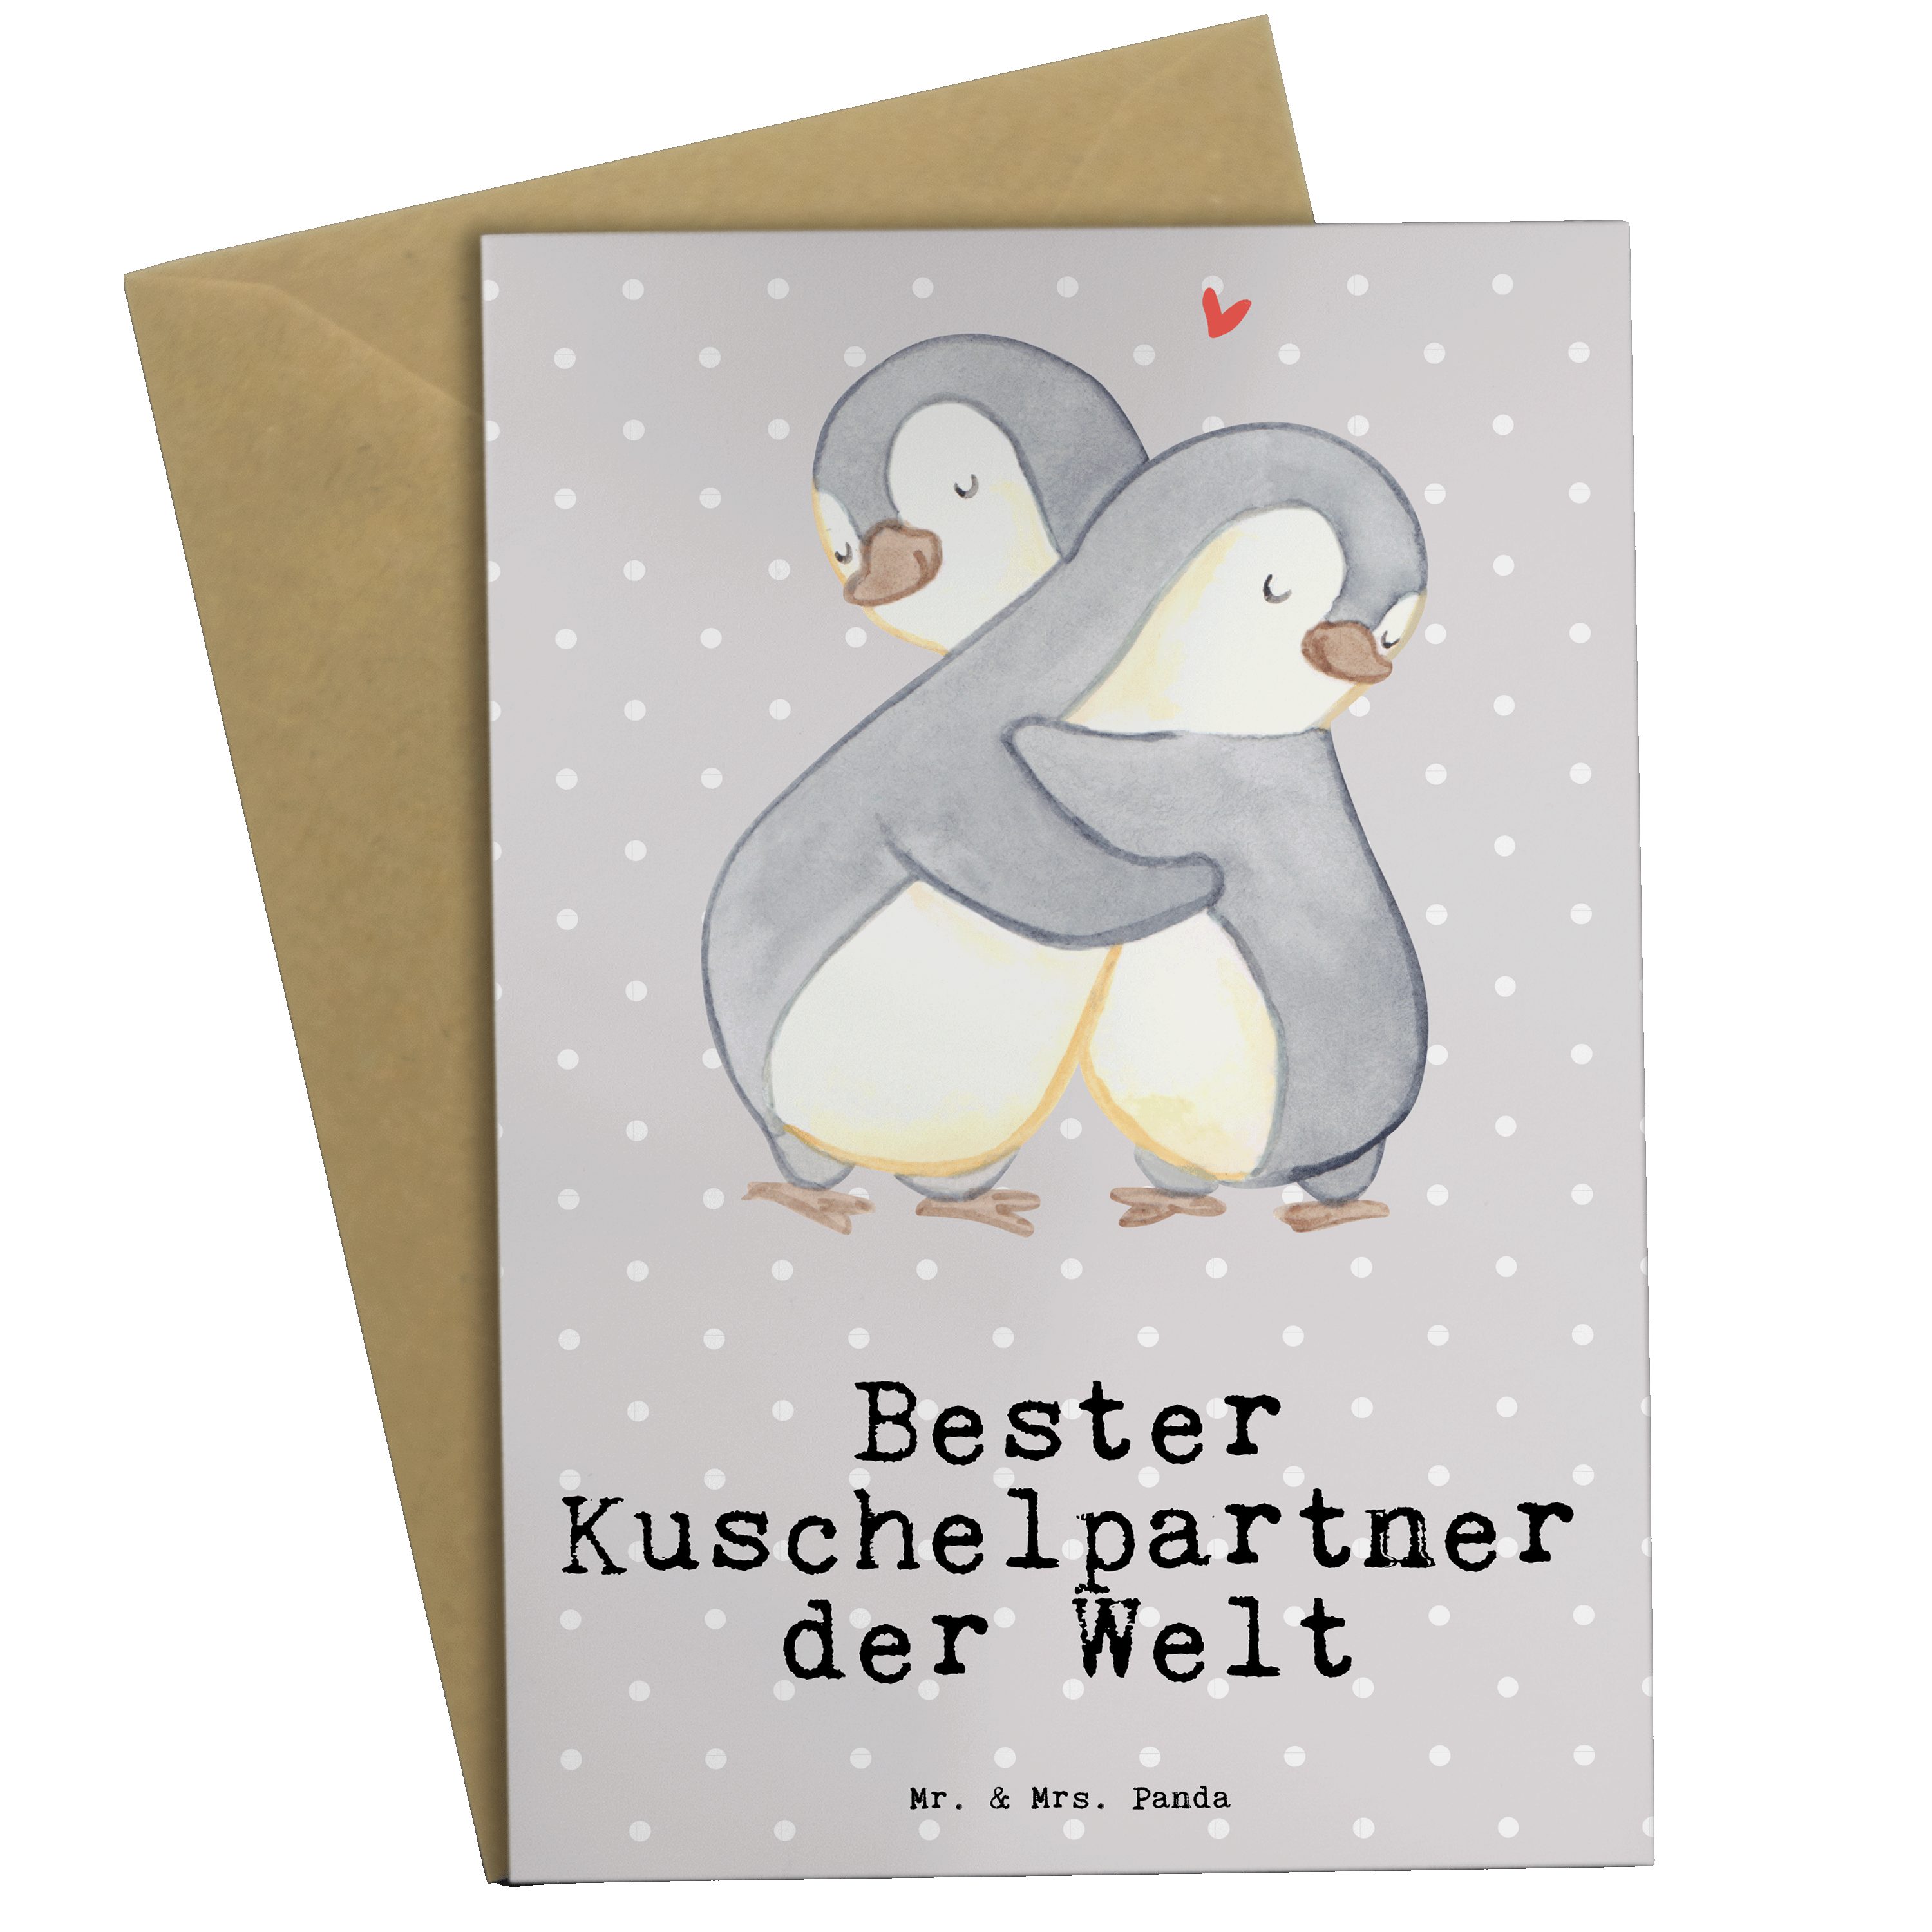 Mr. & Mrs. Panda Grußkarte Pinguin Bester Kuschelpartner der Welt - Grau Pastell - Geschenk, Fre